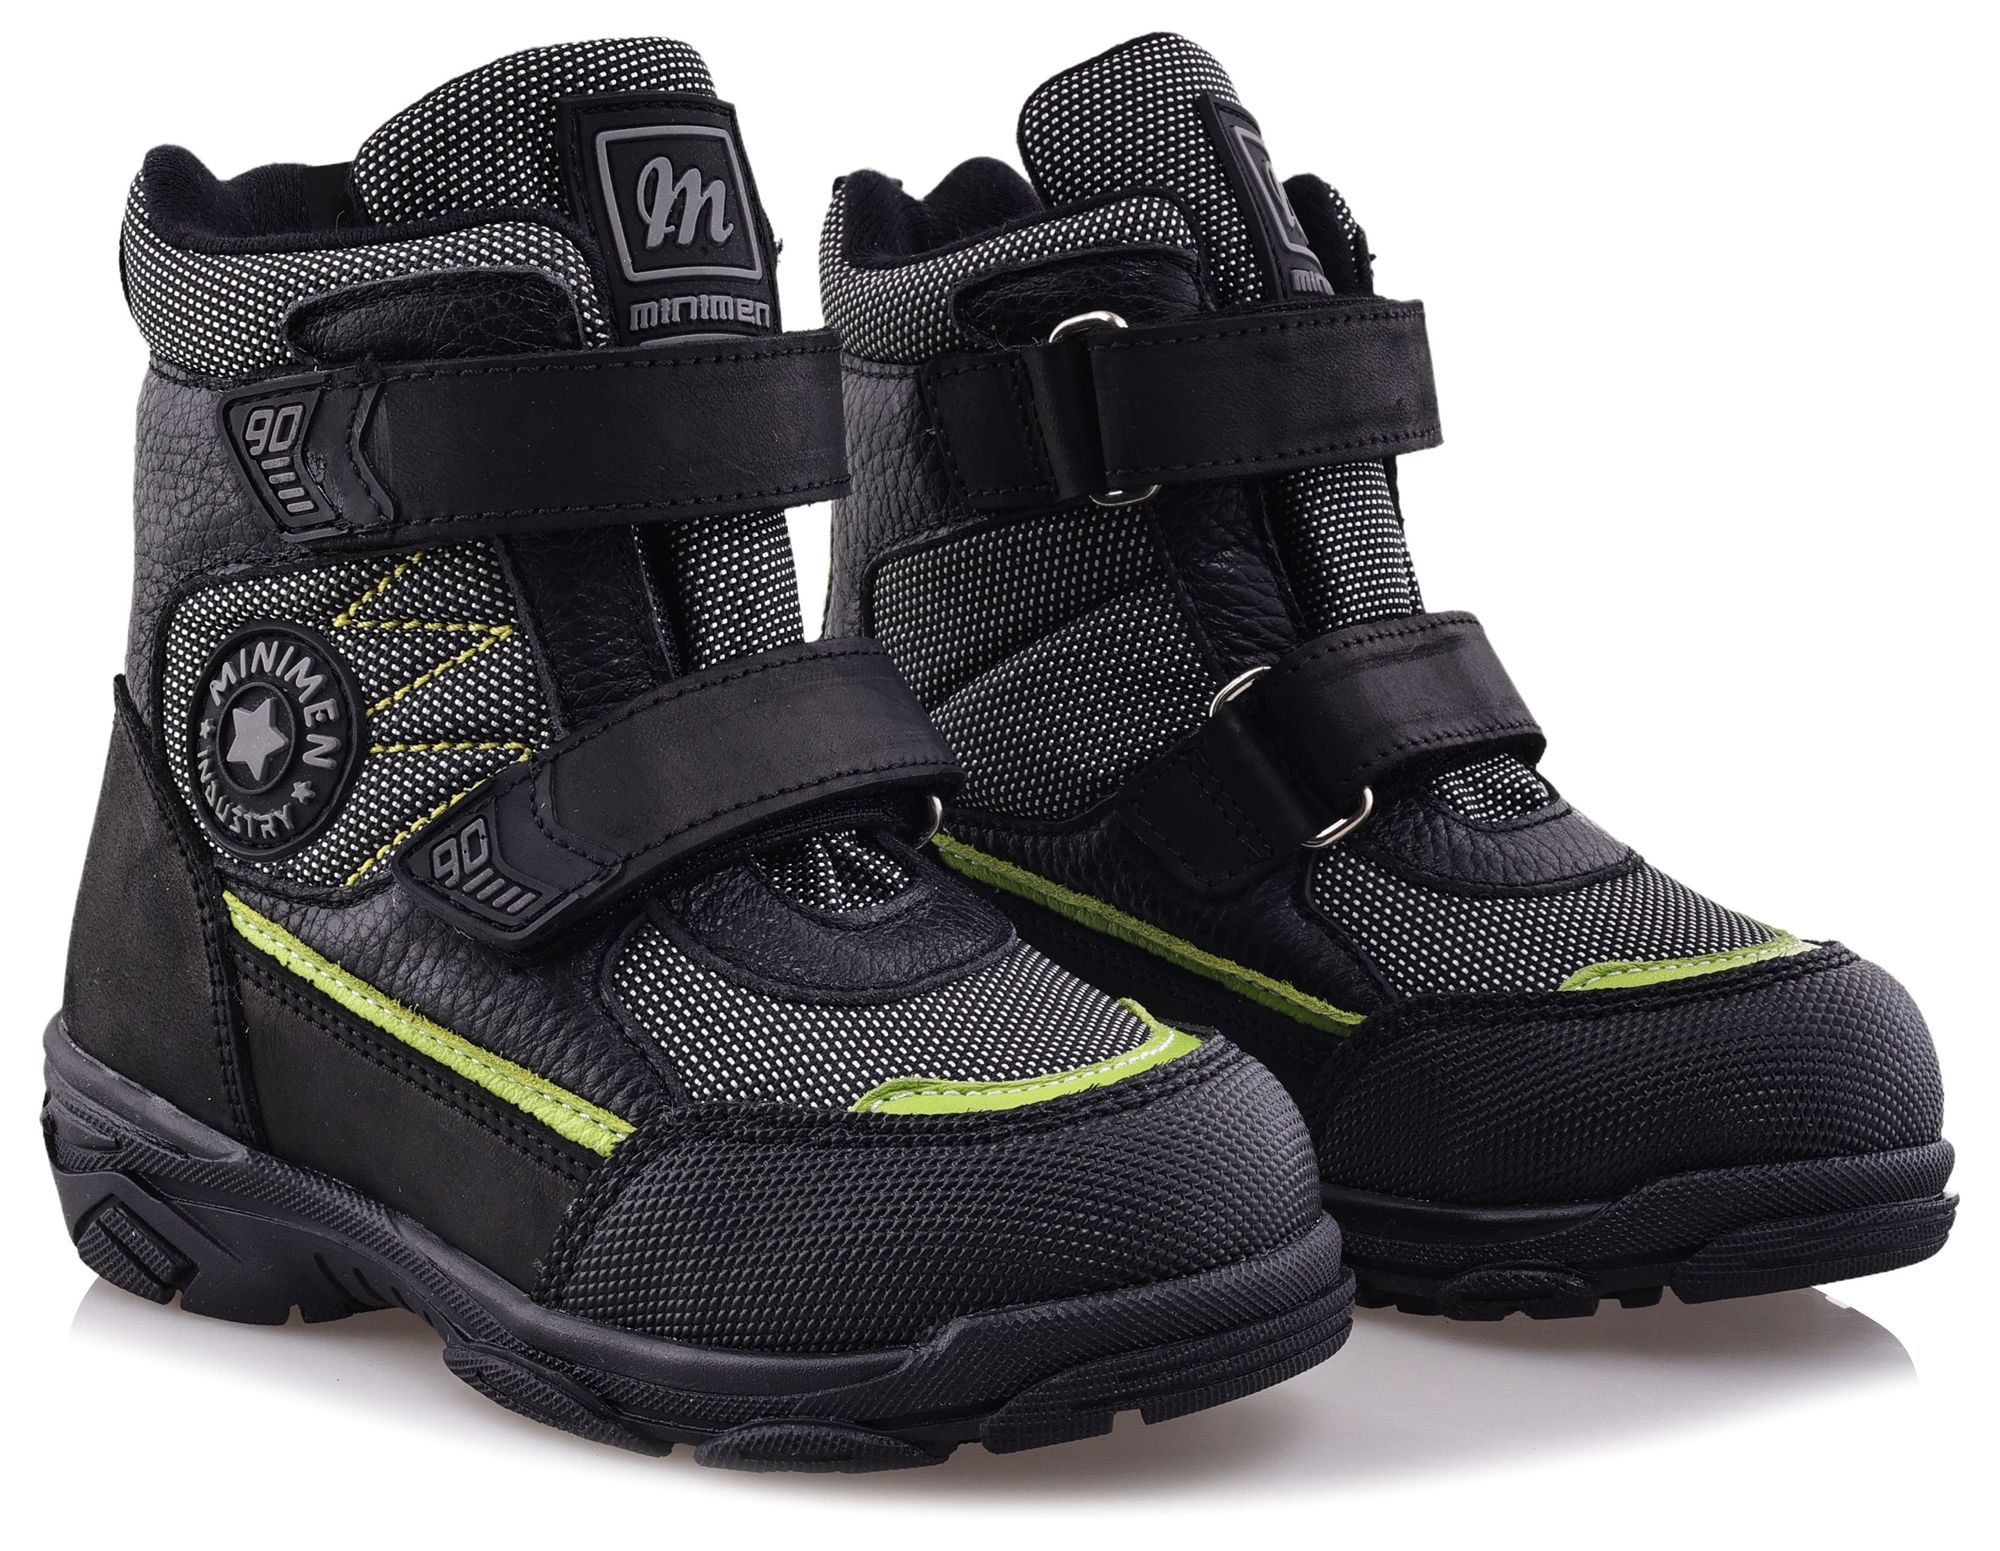 Ботинки Minimen для мальчиков, чёрные, размер 32, 2657-64-23B-02